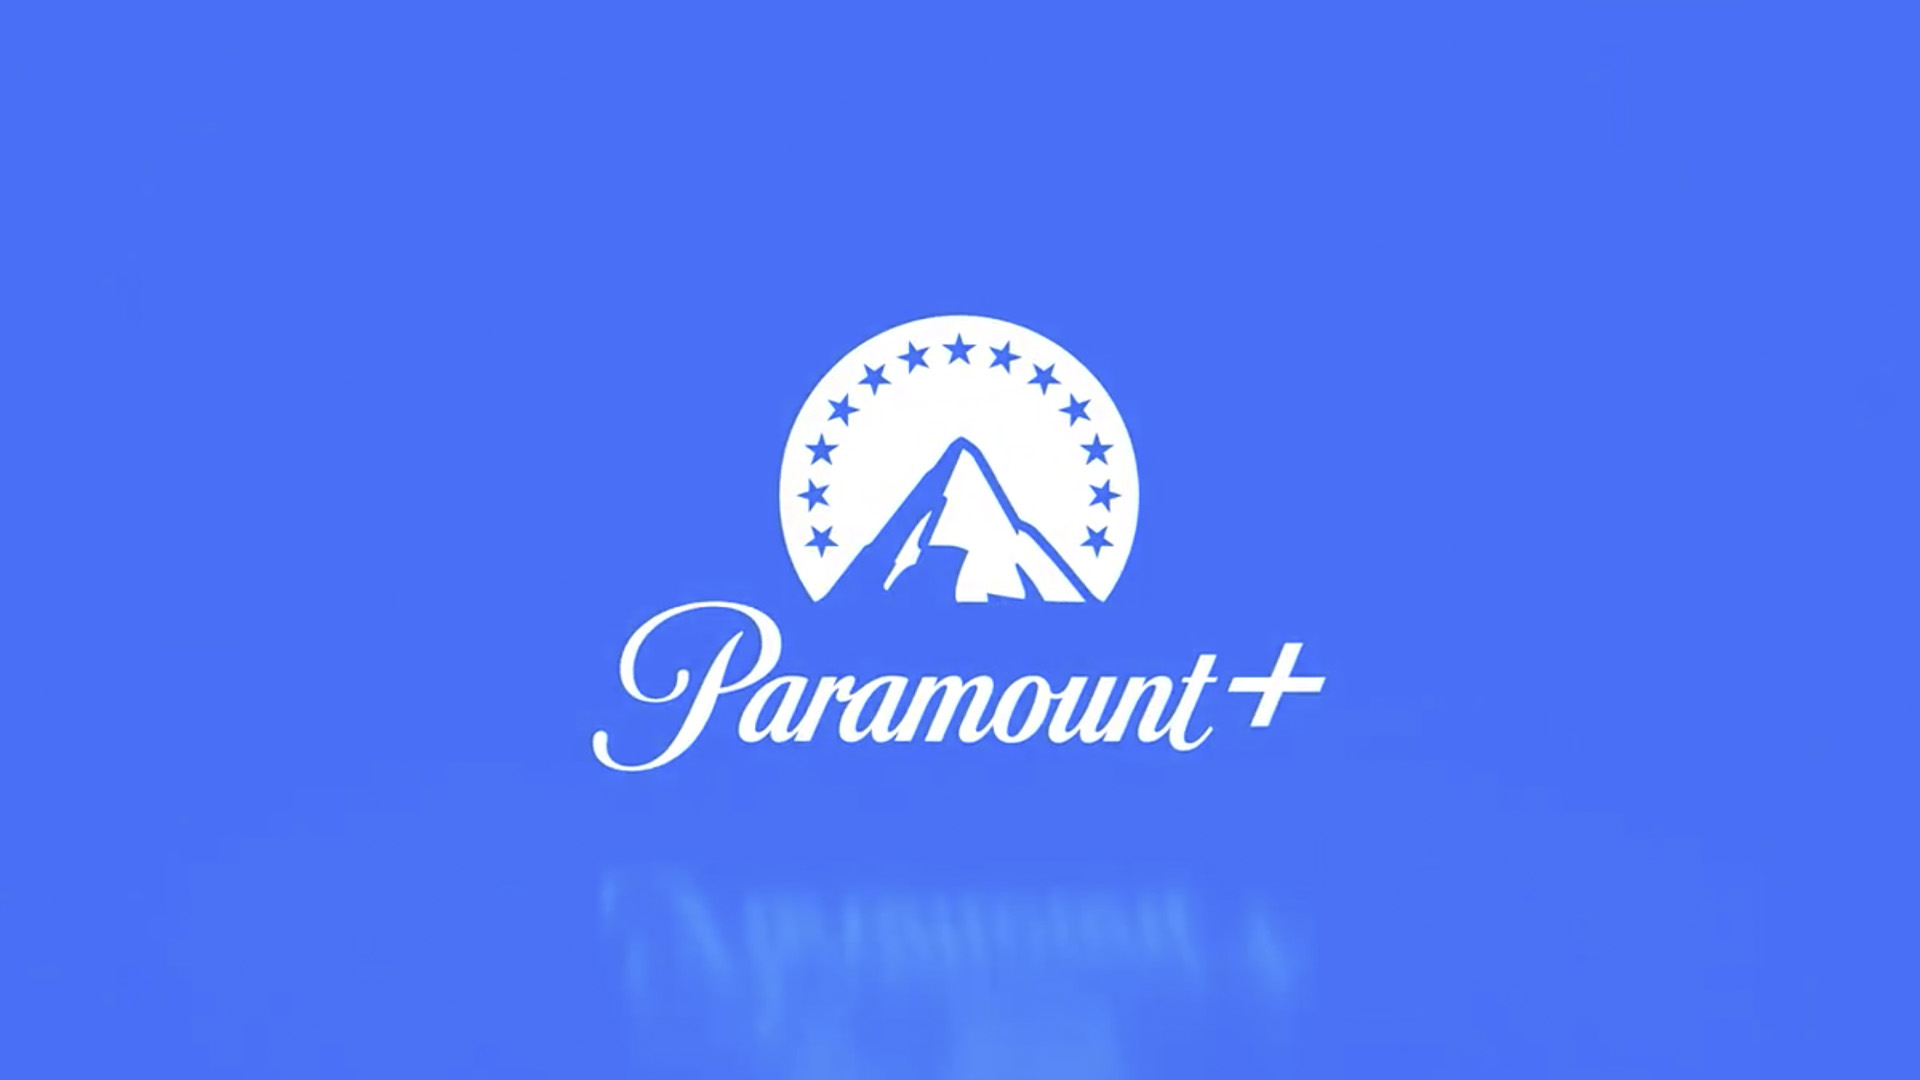 Paramount busca posicionarse entre las plataformas de streaming (Paramount)